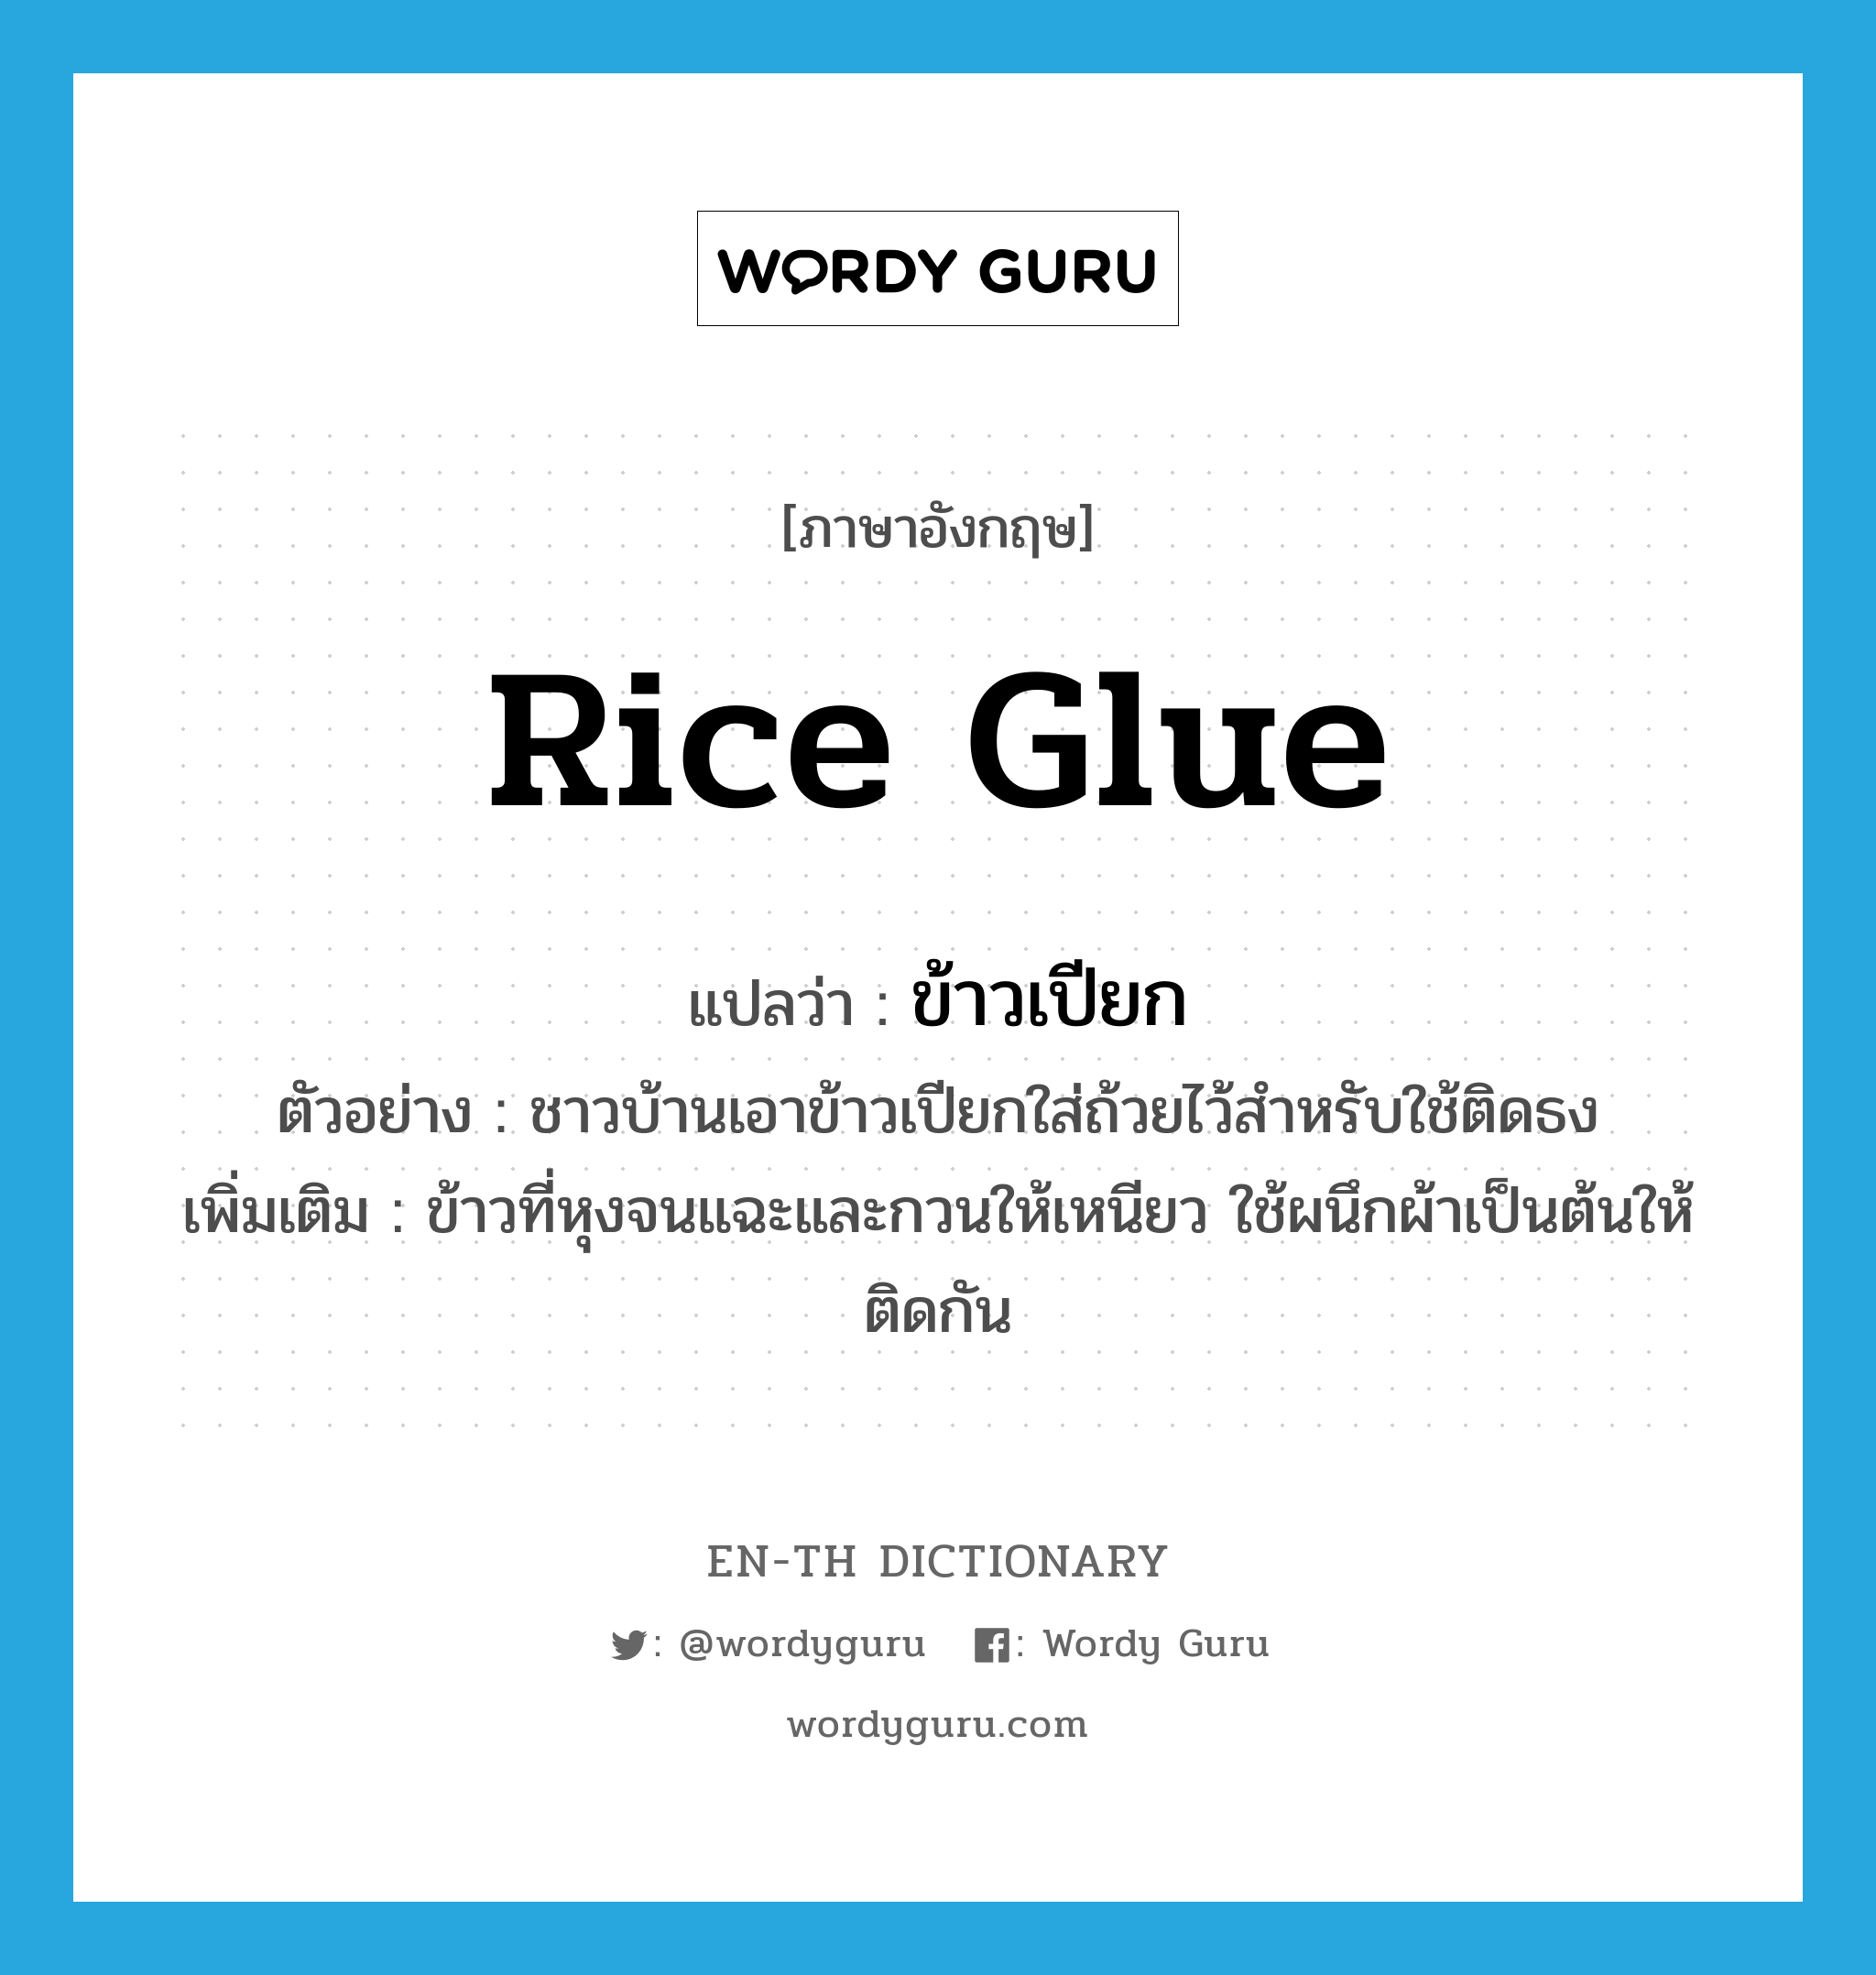 ข้าวเปียก ภาษาอังกฤษ?, คำศัพท์ภาษาอังกฤษ ข้าวเปียก แปลว่า rice glue ประเภท N ตัวอย่าง ชาวบ้านเอาข้าวเปียกใส่ถ้วยไว้สำหรับใช้ติดธง เพิ่มเติม ข้าวที่หุงจนแฉะและกวนให้เหนียว ใช้ผนึกผ้าเป็นต้นให้ติดกัน หมวด N